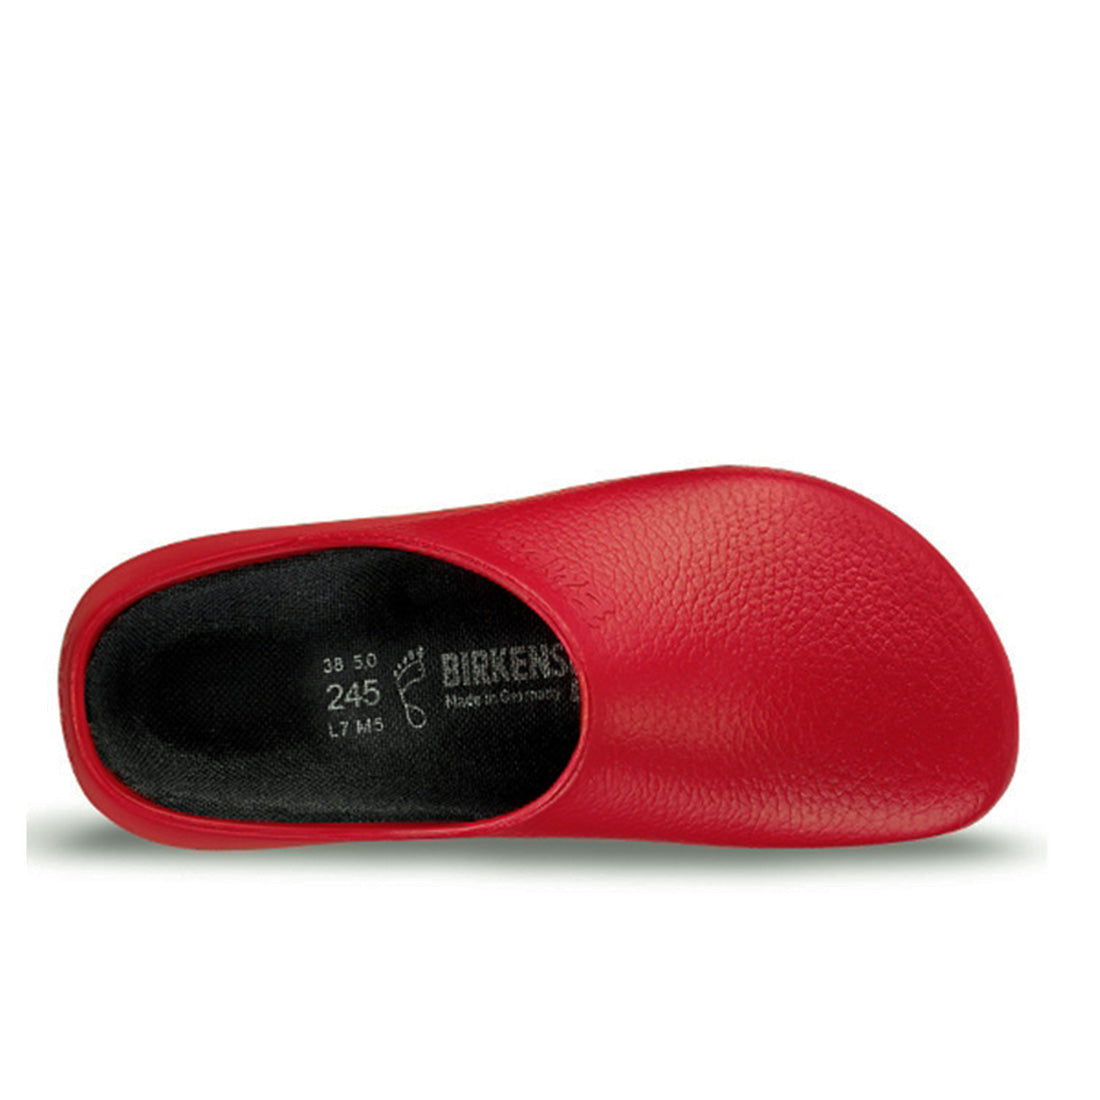 Birkenstock Super Birki Red For Nurses and Hospitality | Shays Shoes Online